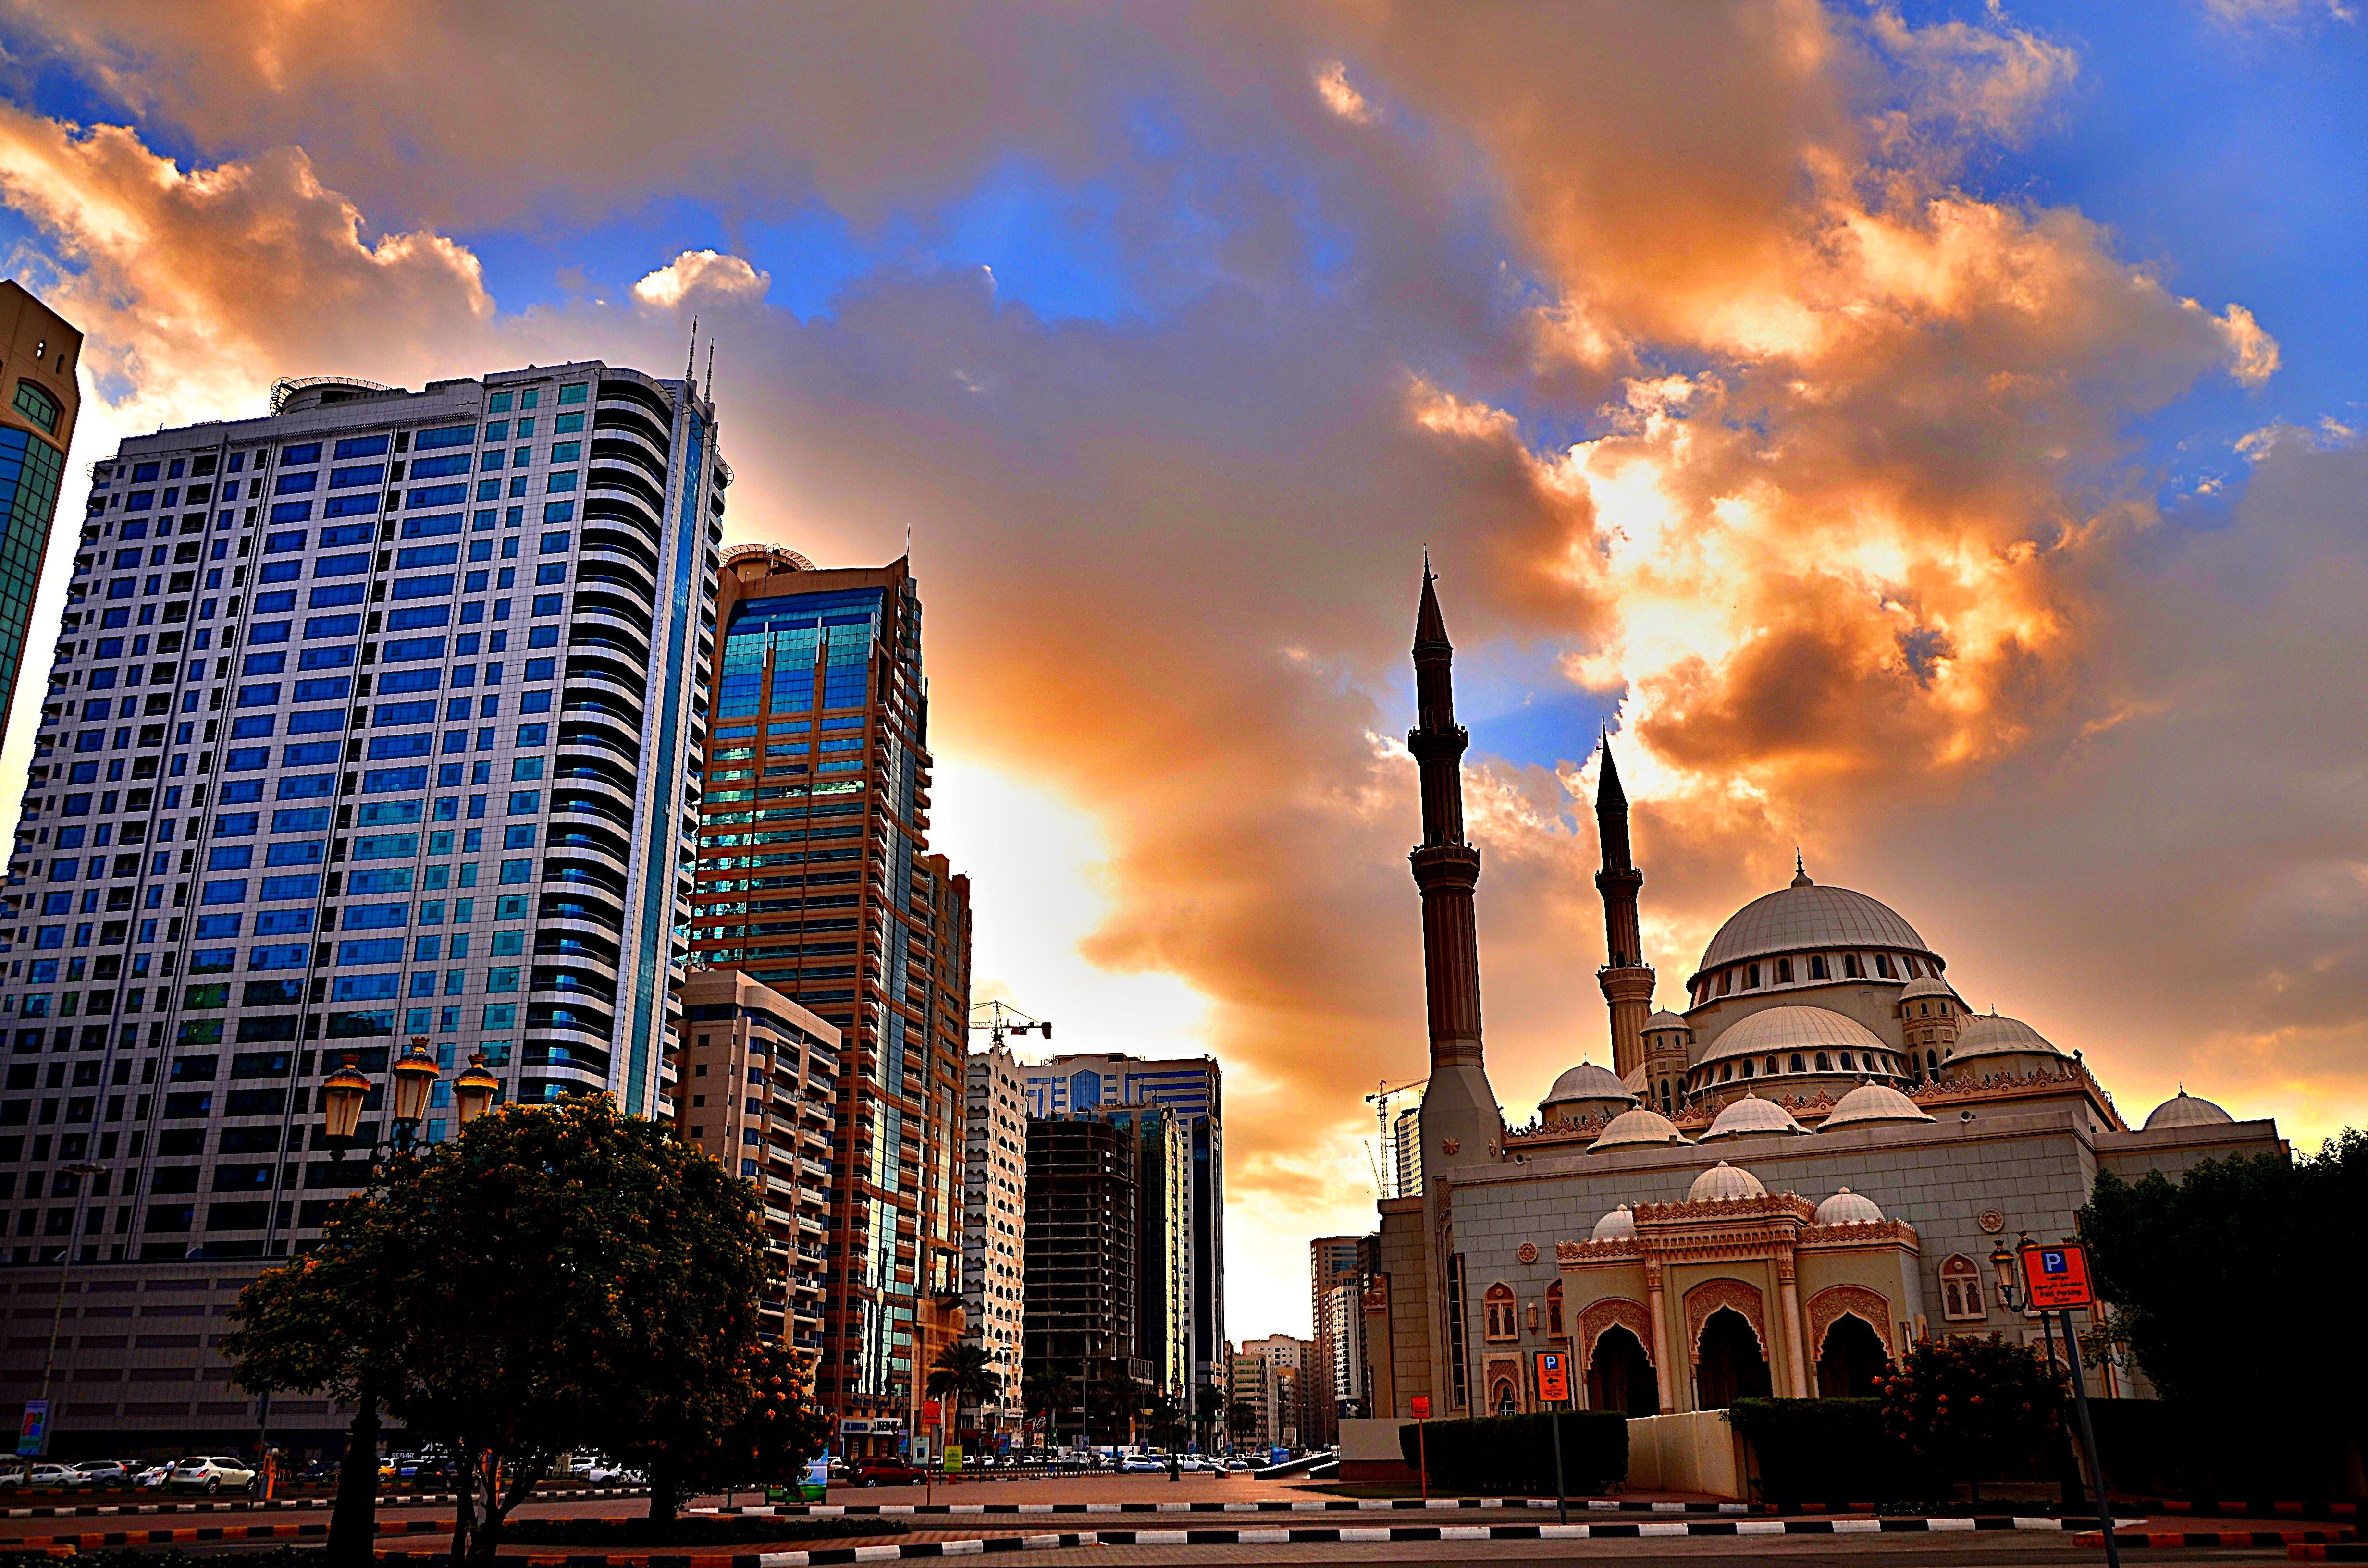 An-Noor Mosque in Sharjah, UAE - Al-Noor Mosque in Sharjah, United Arab Emirates -Picture